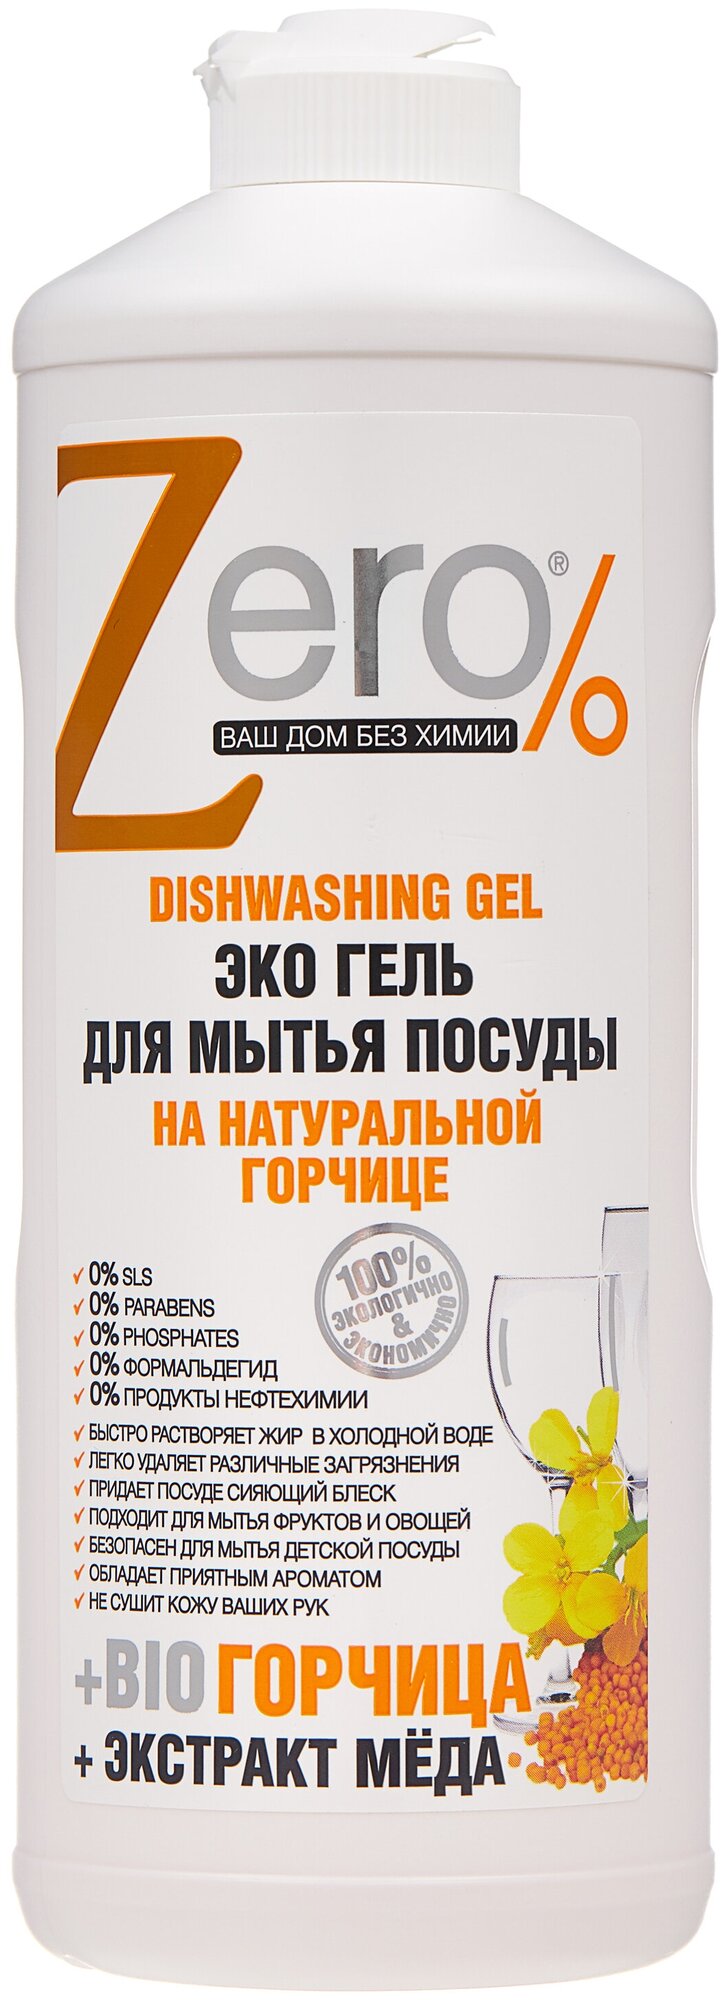 ZERO Эко гель для мытья посуды на натуральной горчице + экстракт меда 500 мл